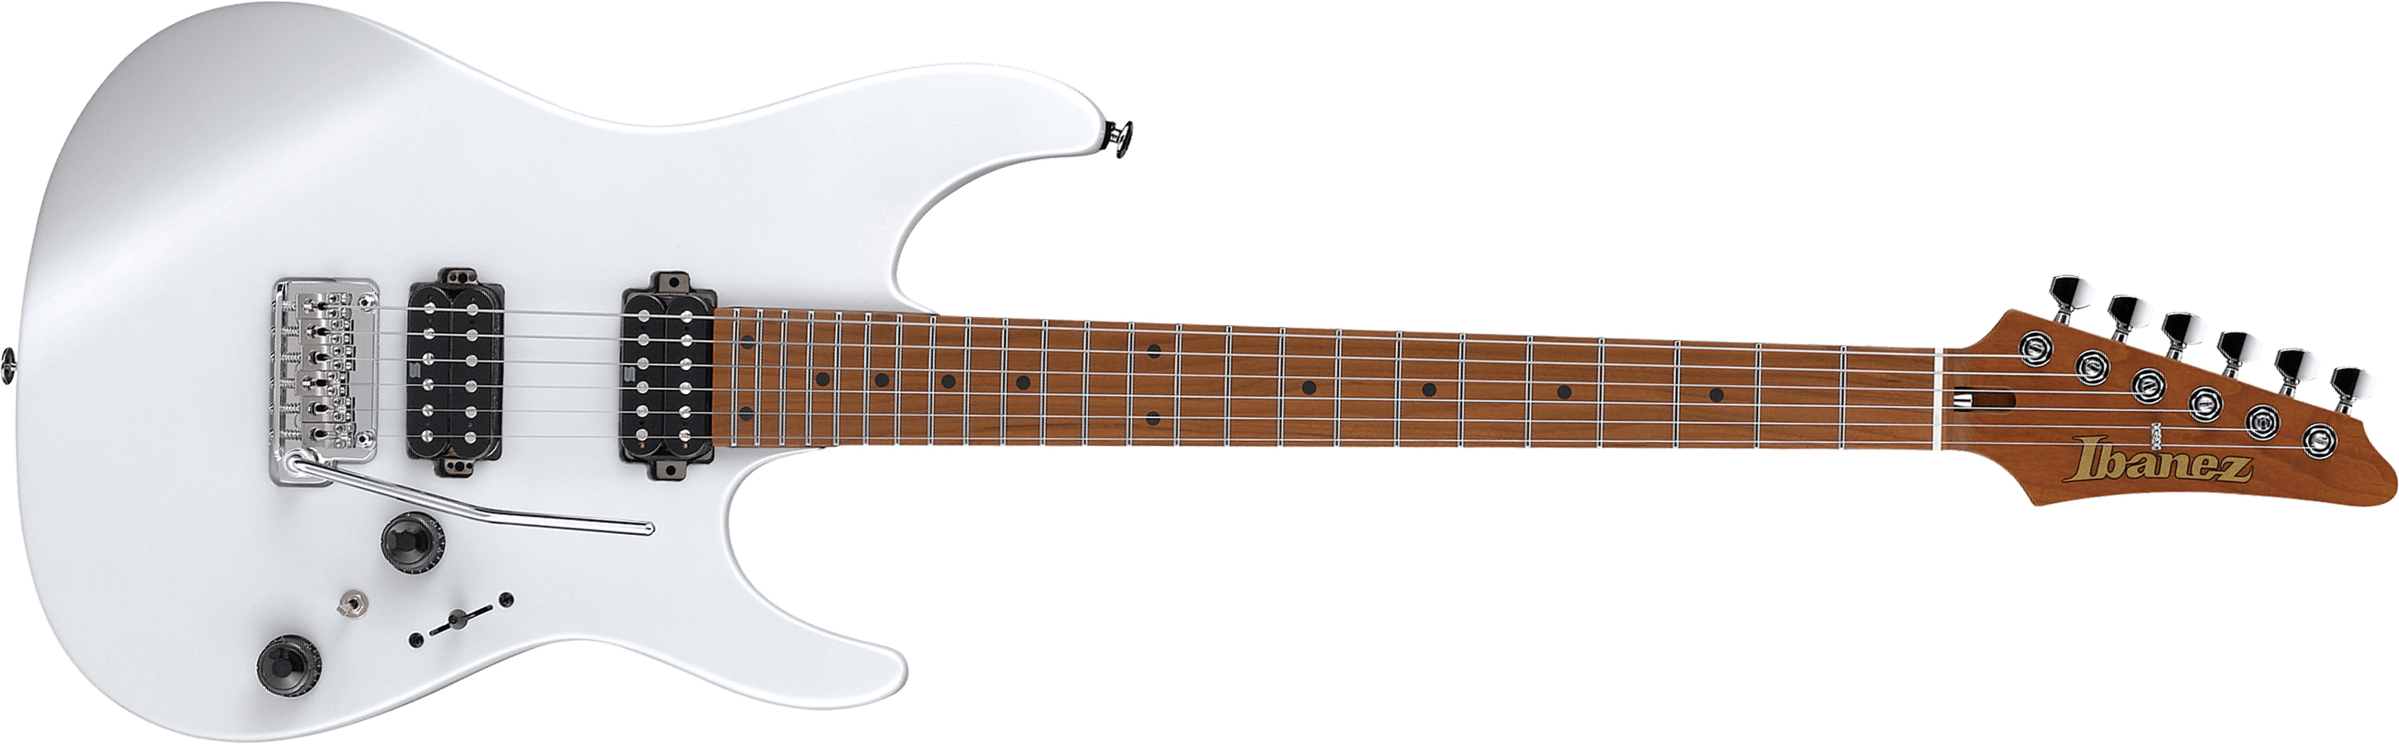 Ibanez Az2402 Pwf Prestige Jap Hh Trem Mn - Pearl White Flat - Guitarra eléctrica con forma de str. - Main picture